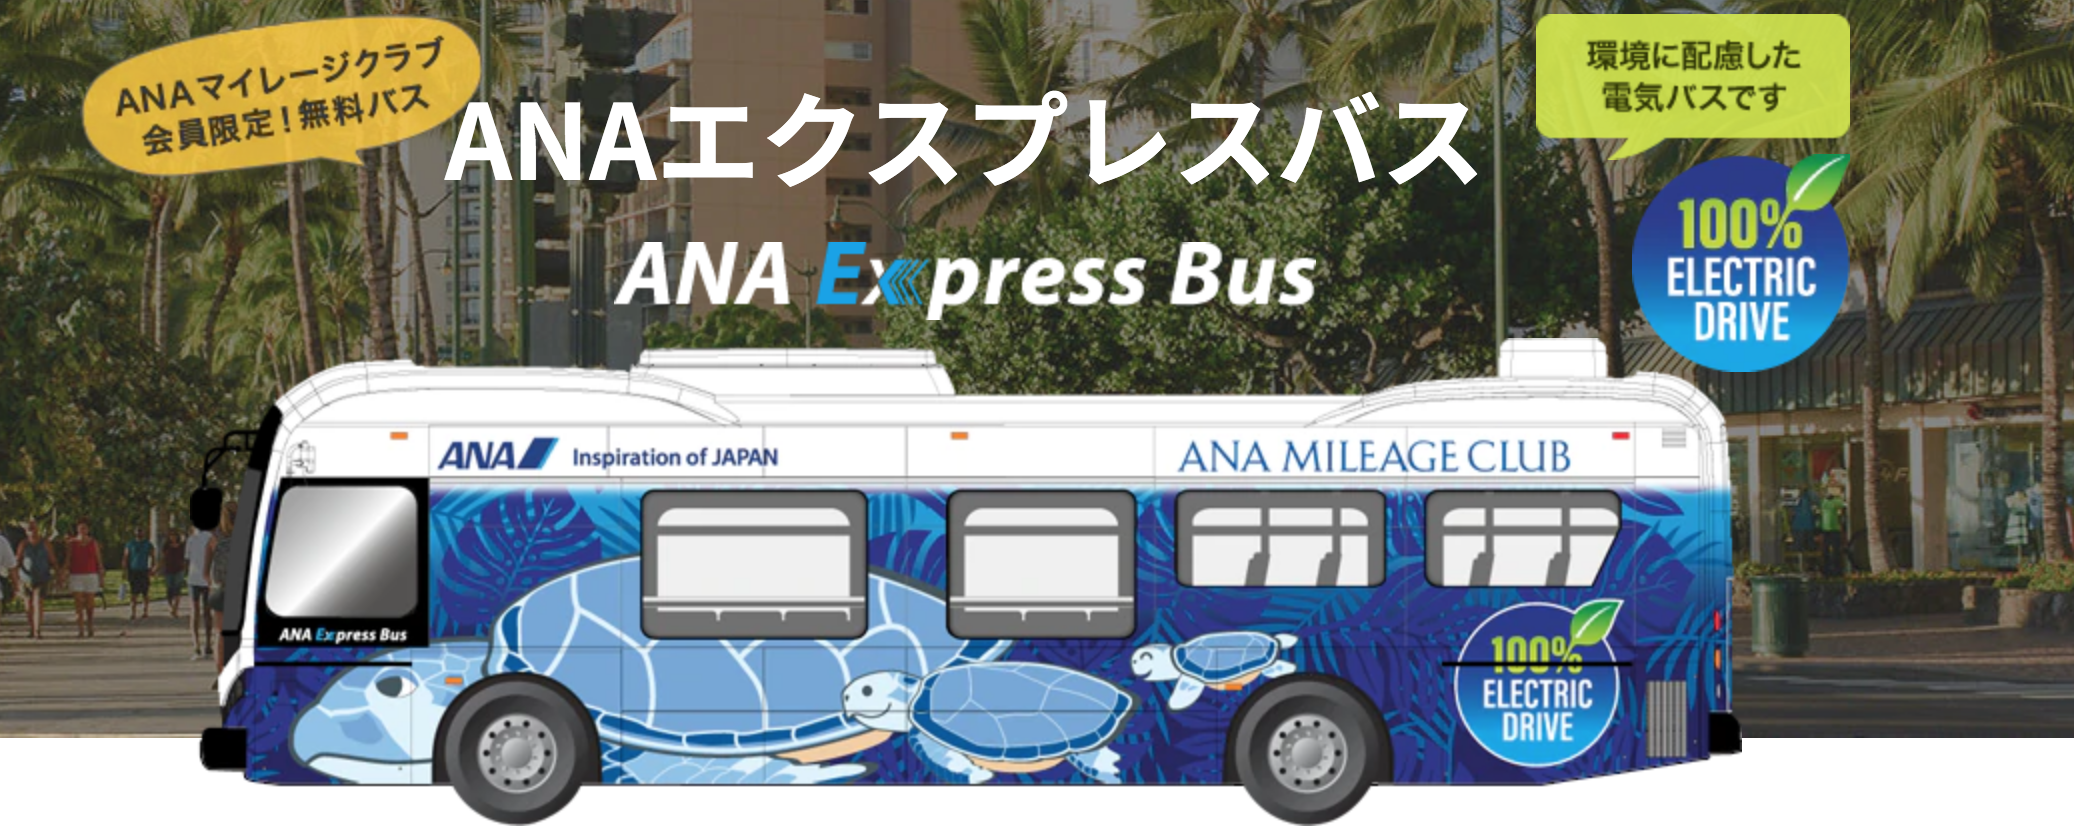 Anaでハワイに行くなら ワイキキ アラモアナセンター直通のanaエクスプレスバスが便利 ハワイとマイルとポイ活を愛する私の旅情報